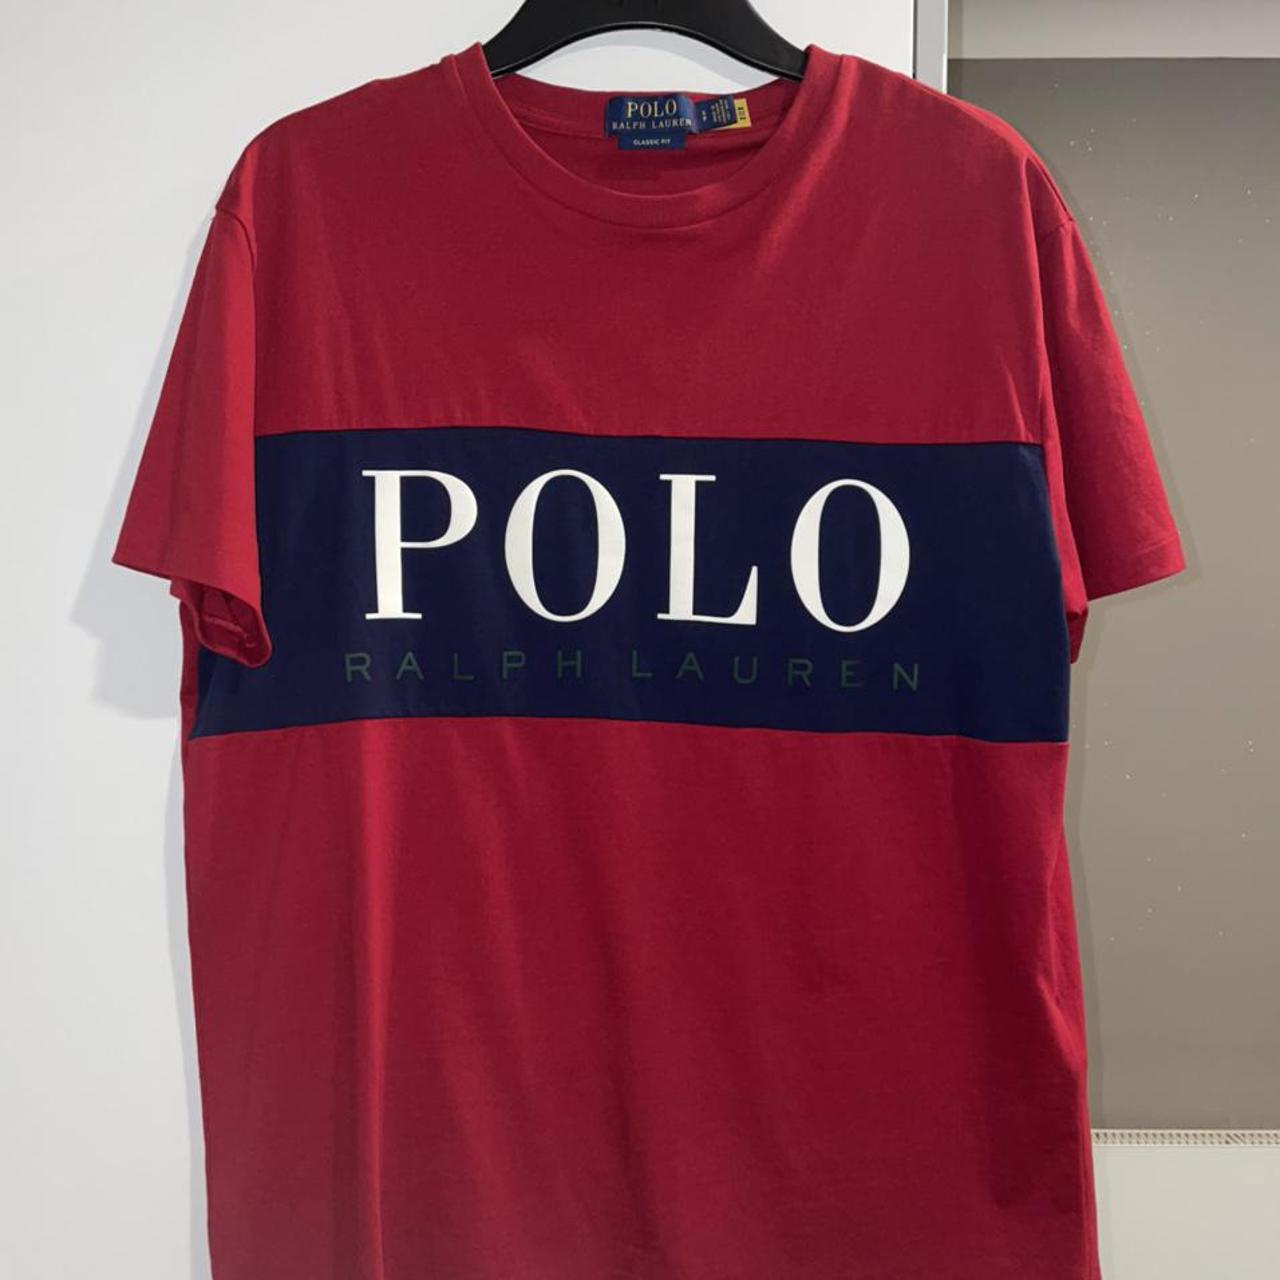 Ralph Lauren T Shirt - Brand new never worn - Size... - Depop